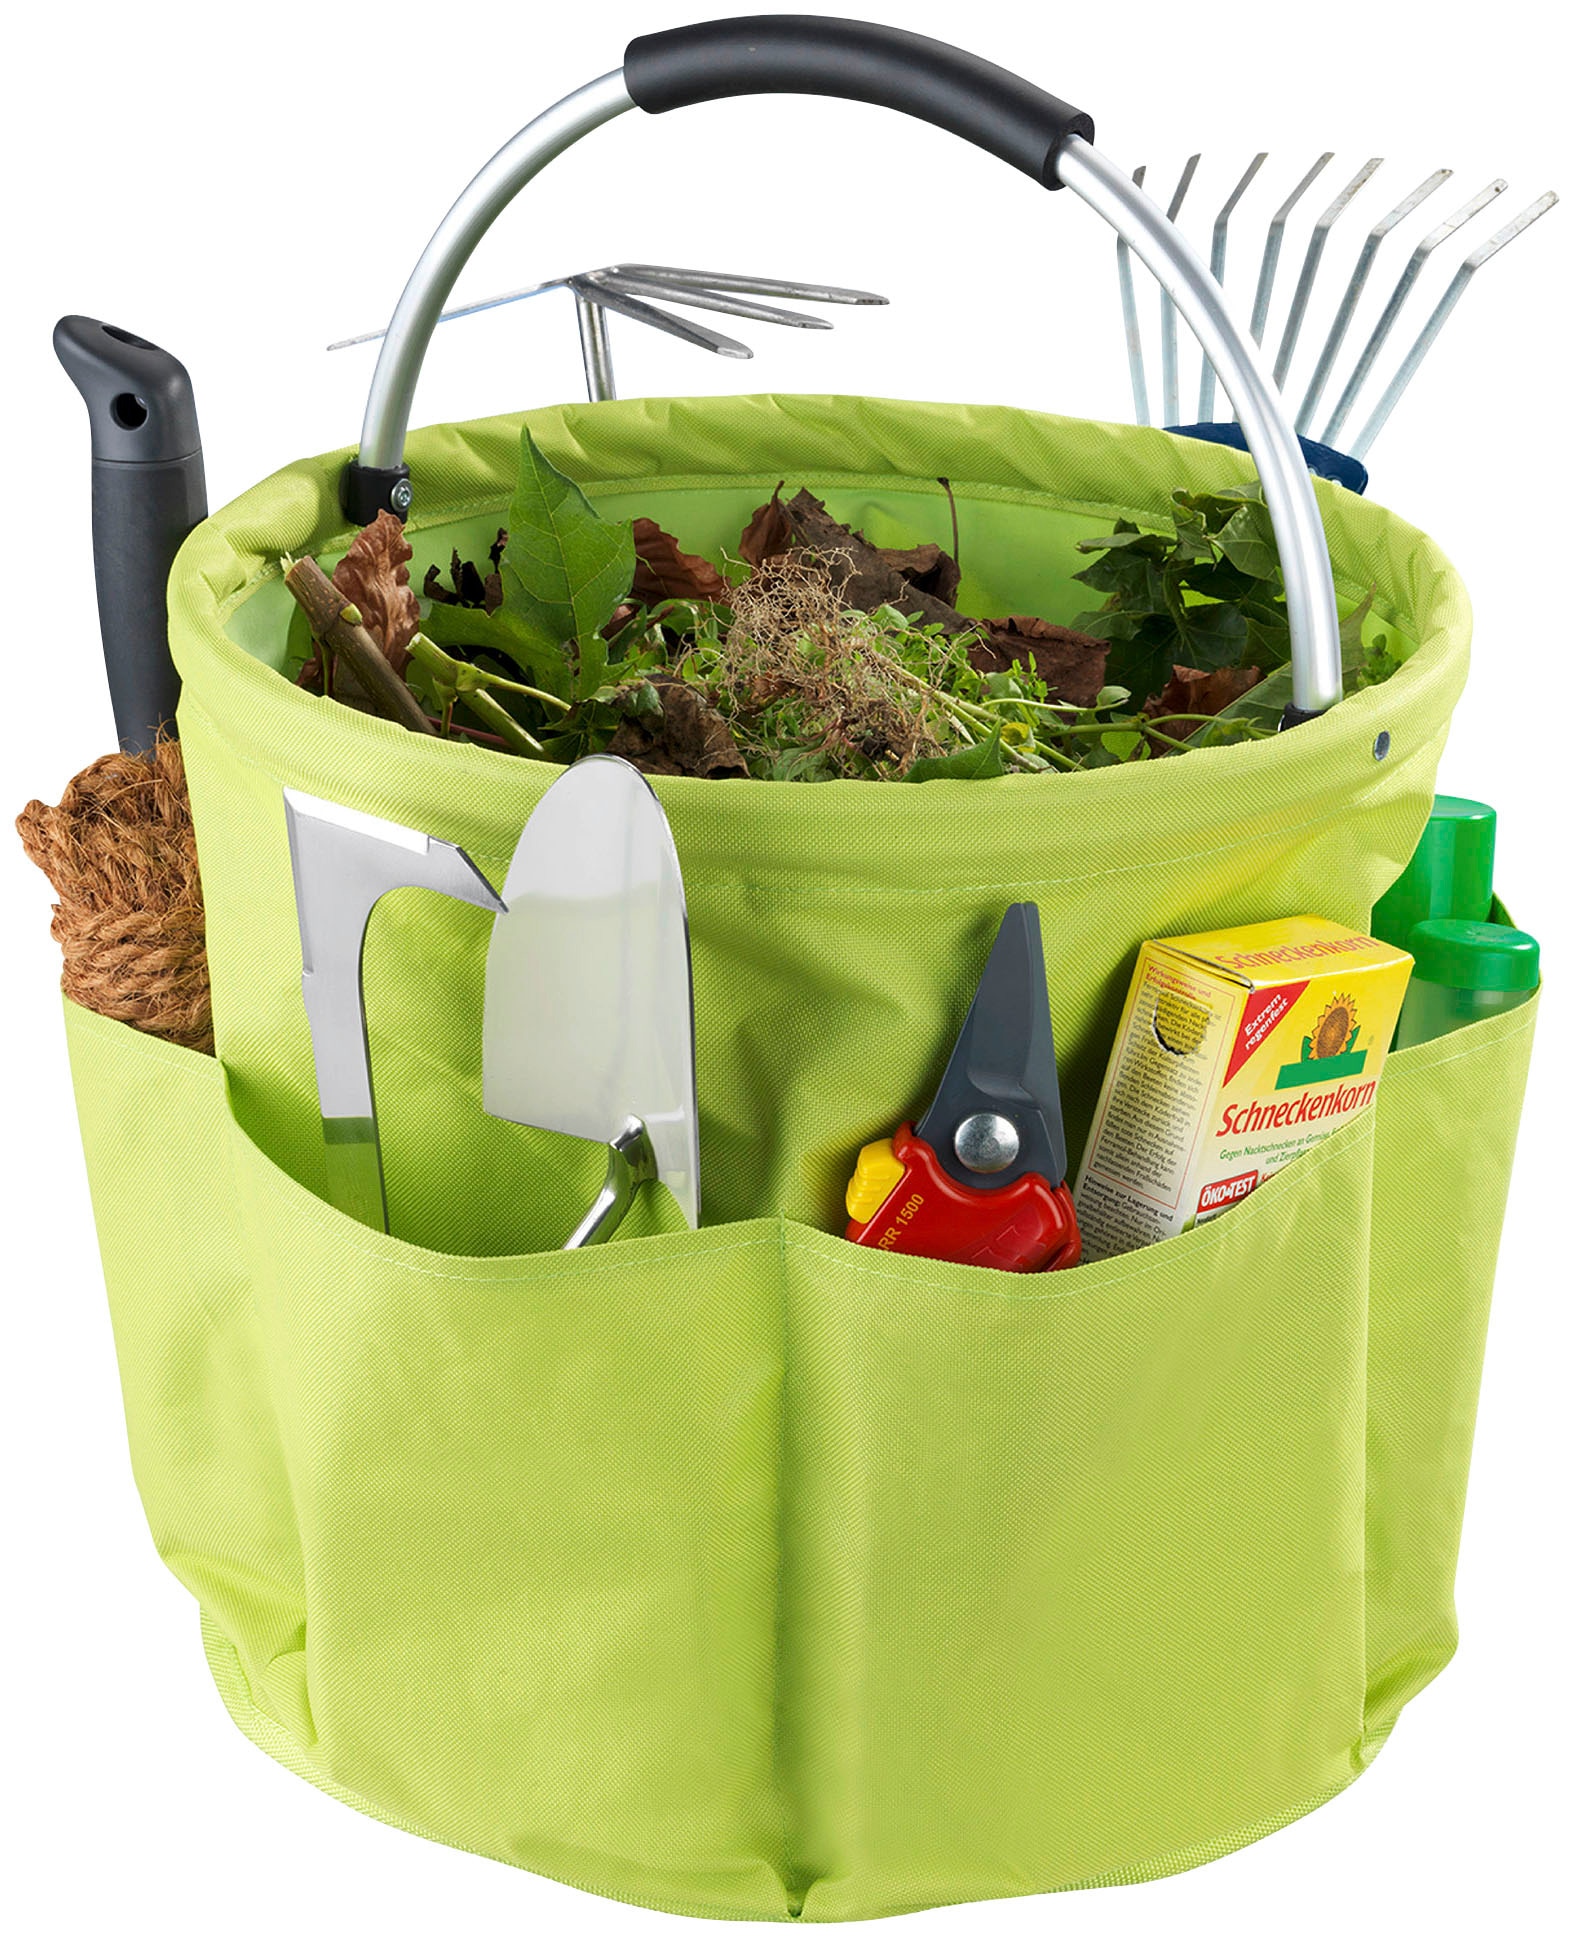 Maximex Gartensack, Aufbewahrungskorb mit 6 Taschen für Gartenwerkzeug